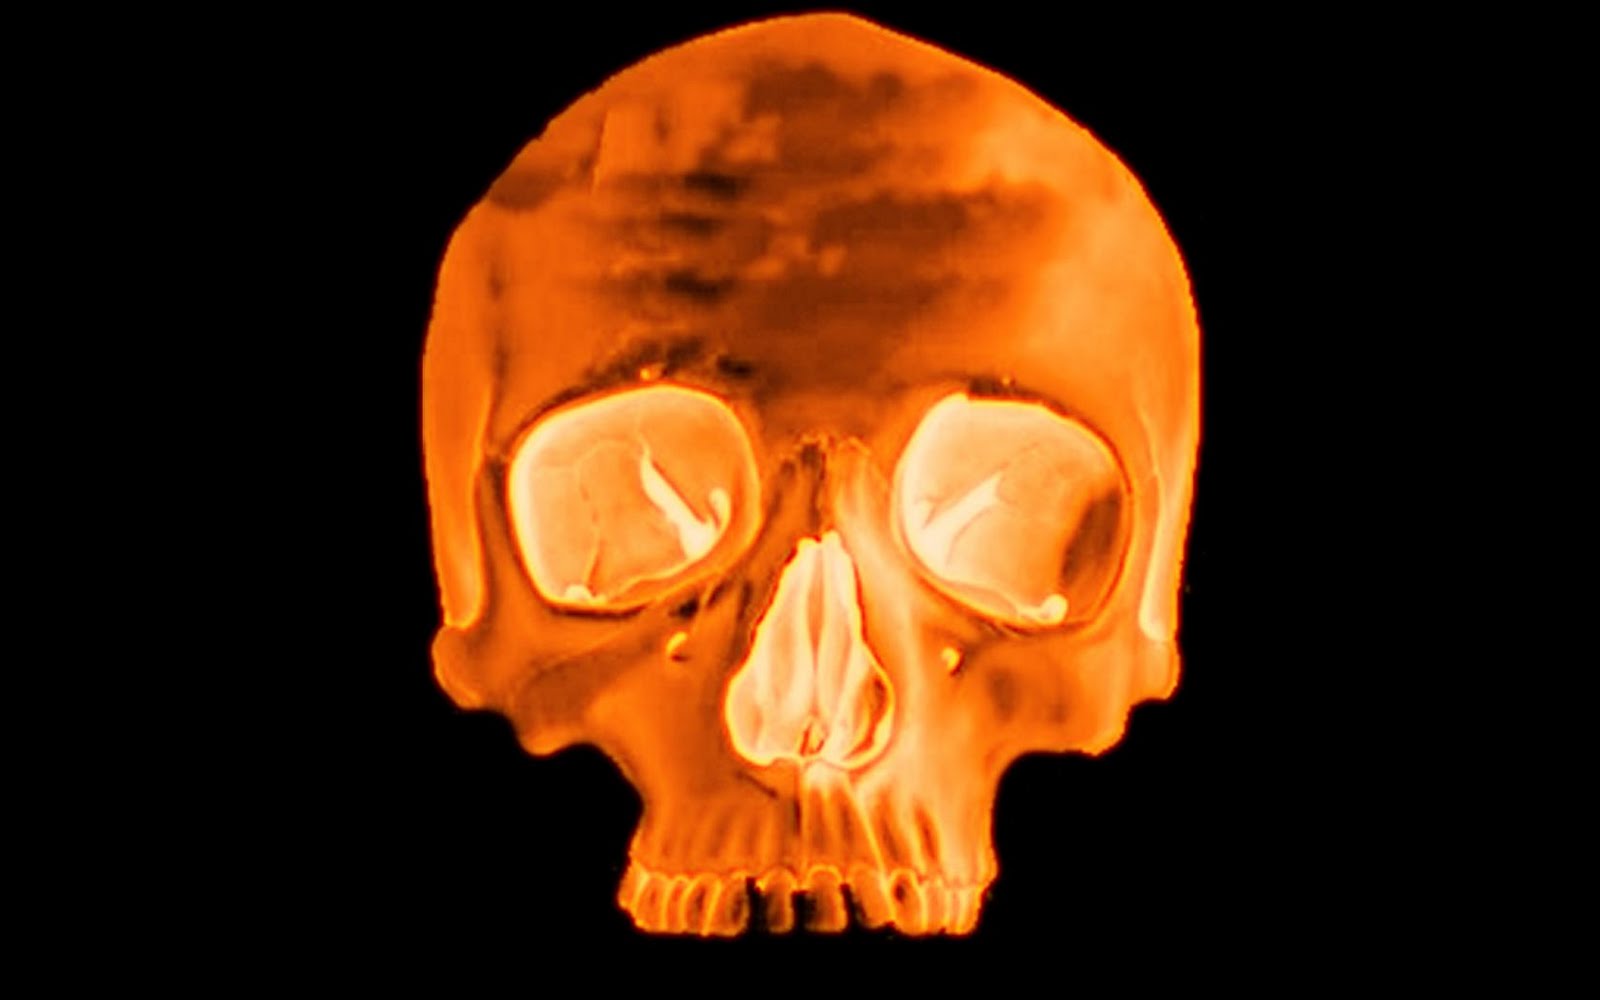 3d Skull Fire Image